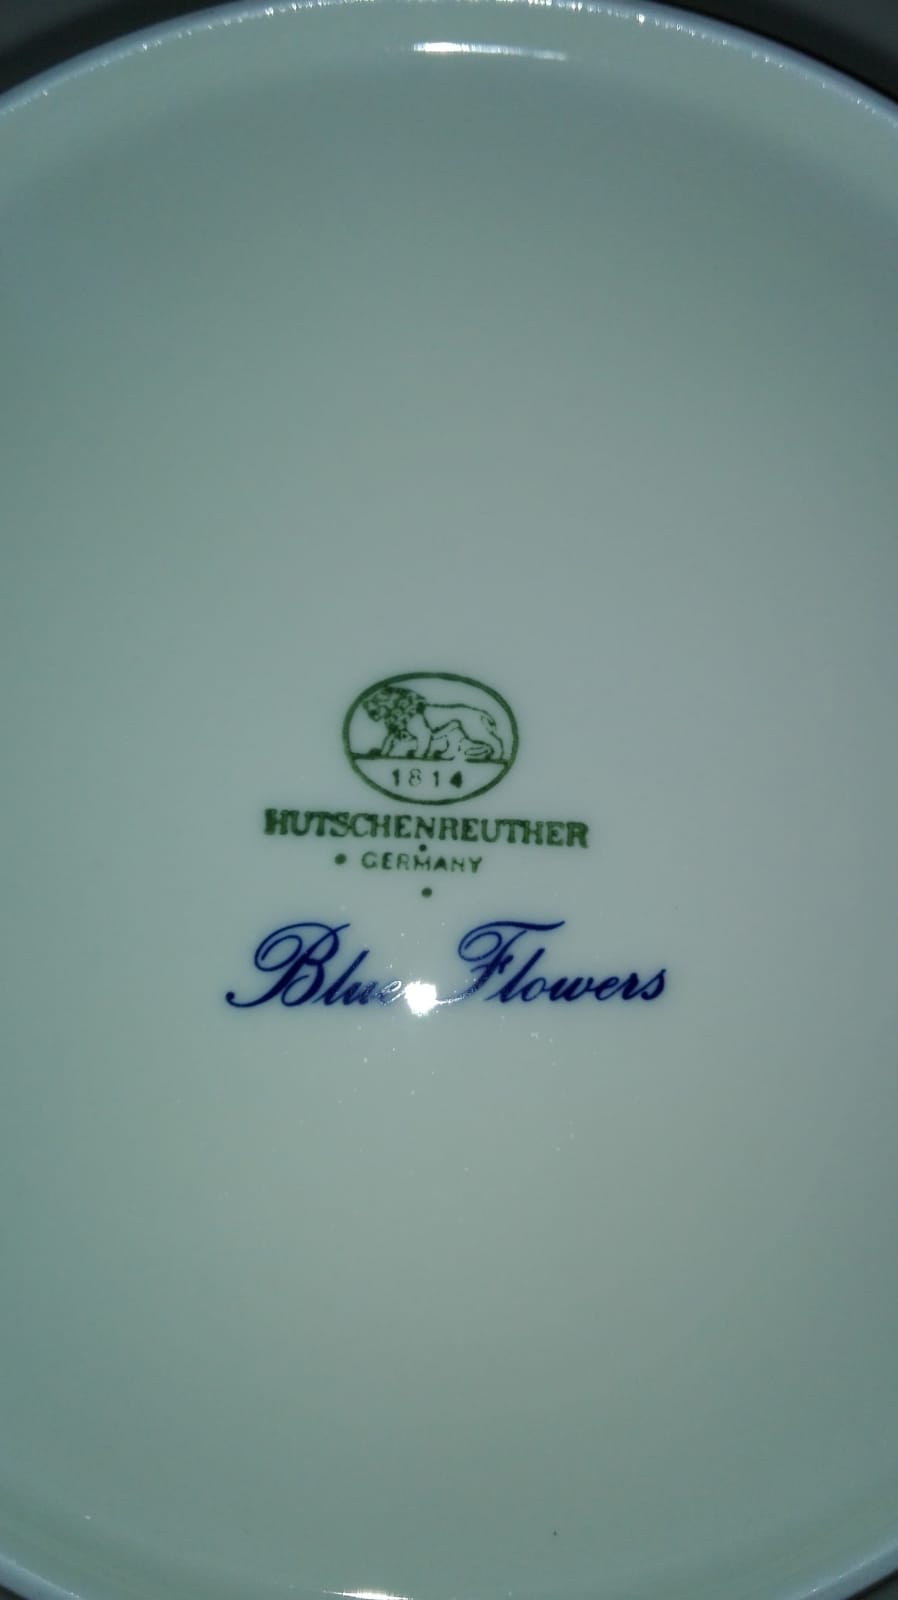 Hutschenreuther Essservice blue flowers